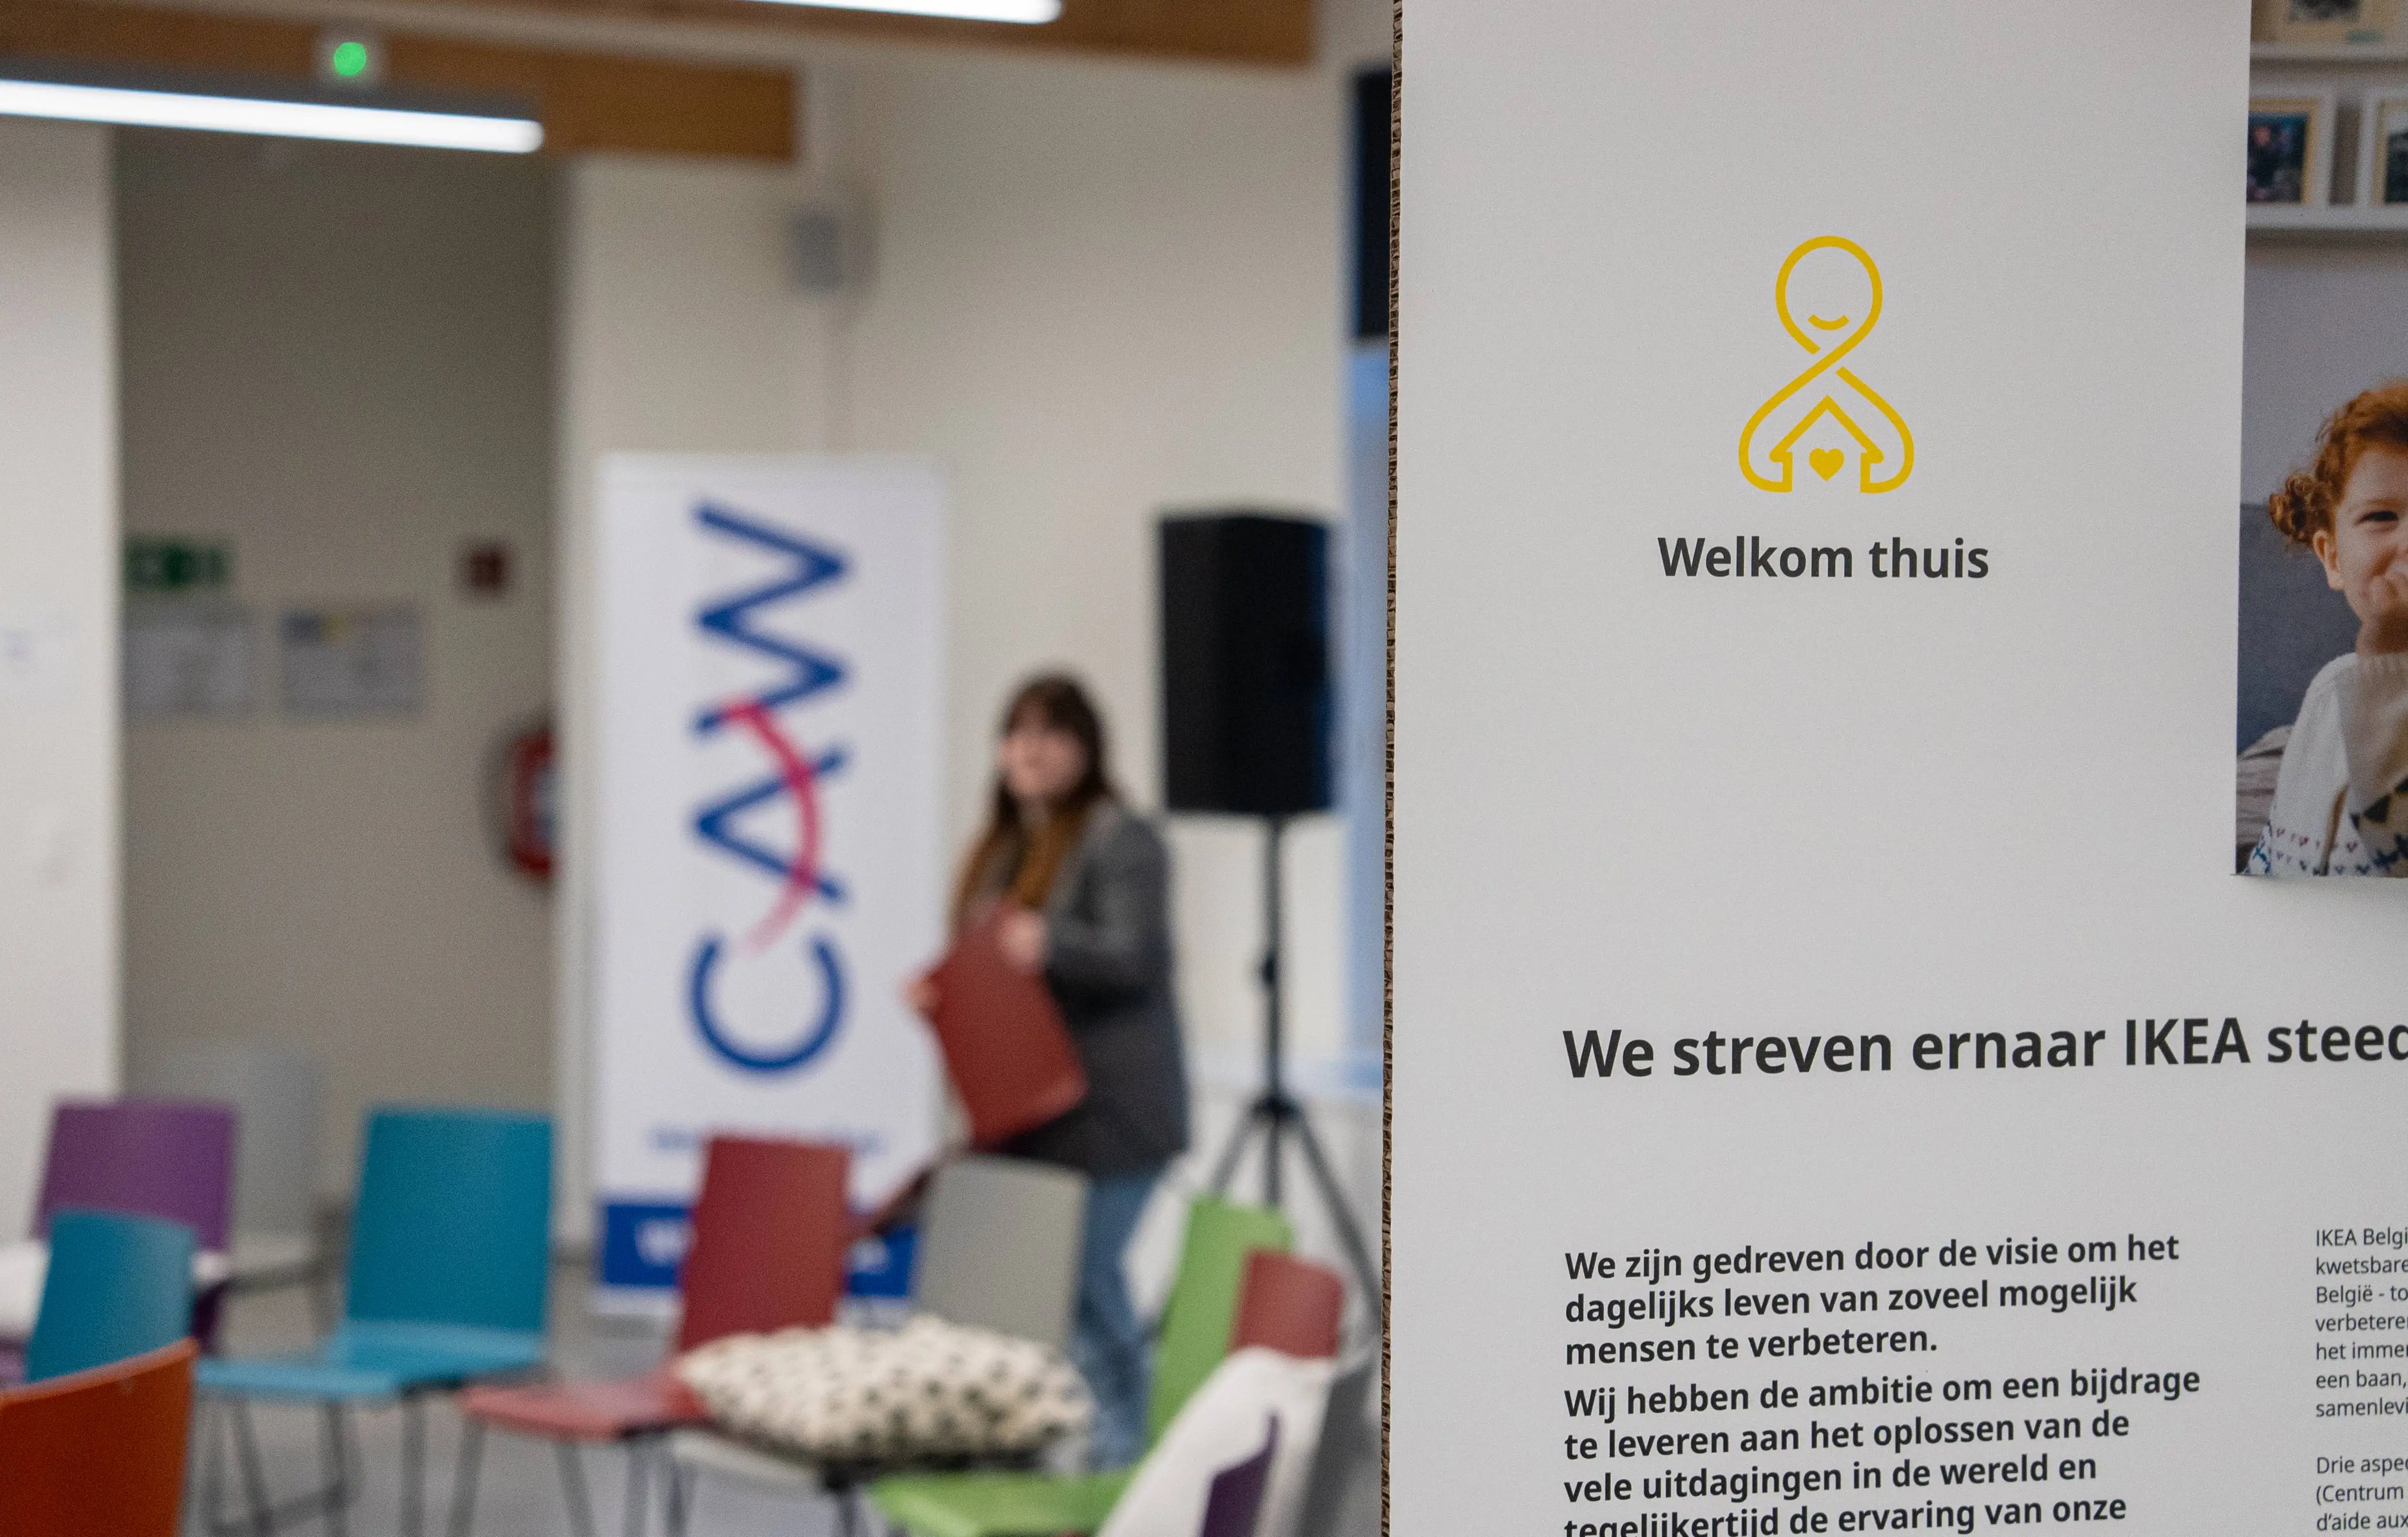 Decoratie van het evenement met de tekst “Welkom Thuis”, de naam van het project van het evenement, en op de achtergrond de lege zaal voor de aankomst van de deelnemers.